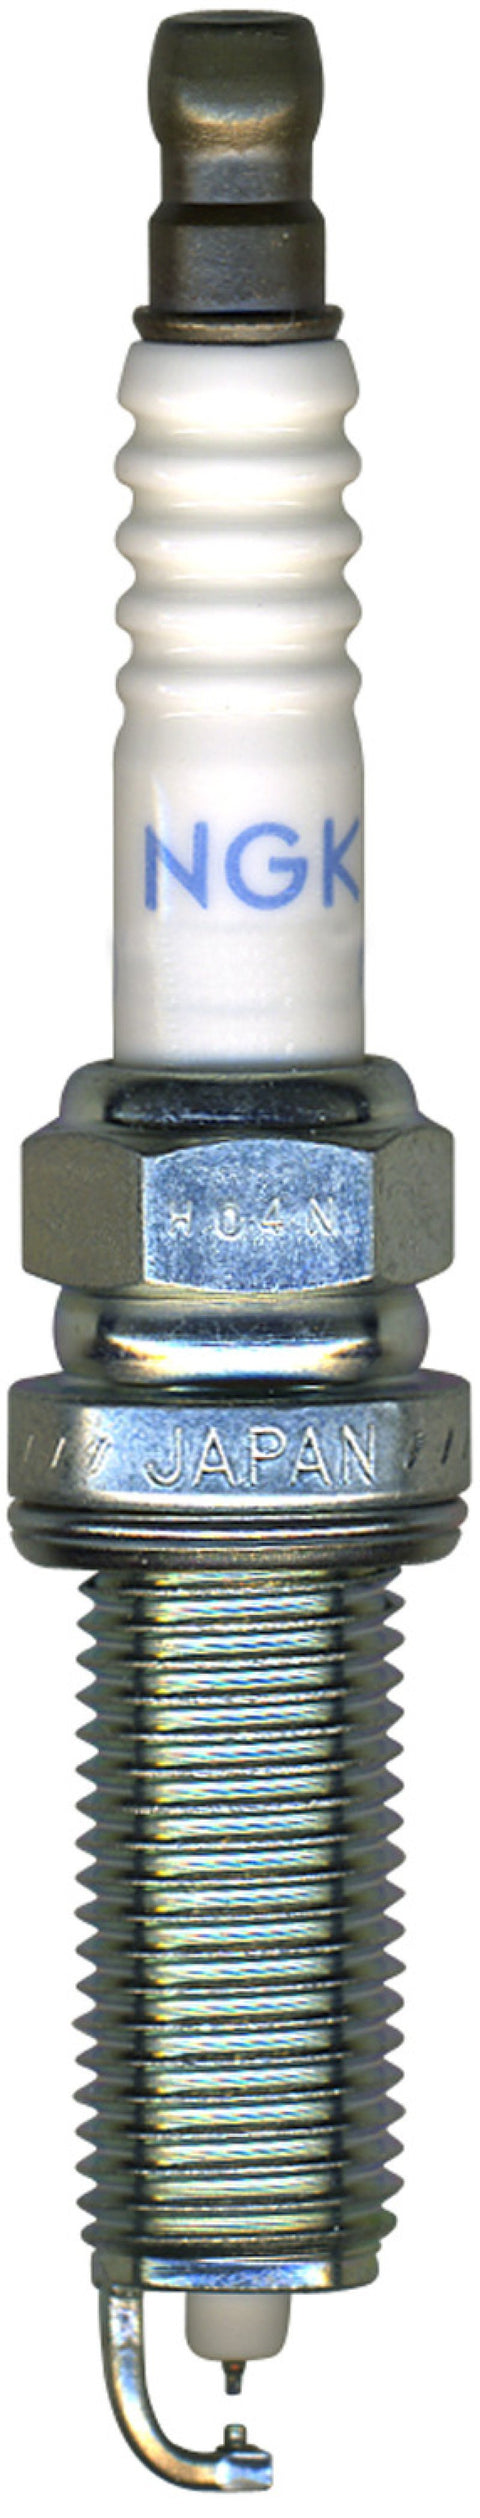 NGK Iridium Heat Range 7 Spark Plug (1406-1)